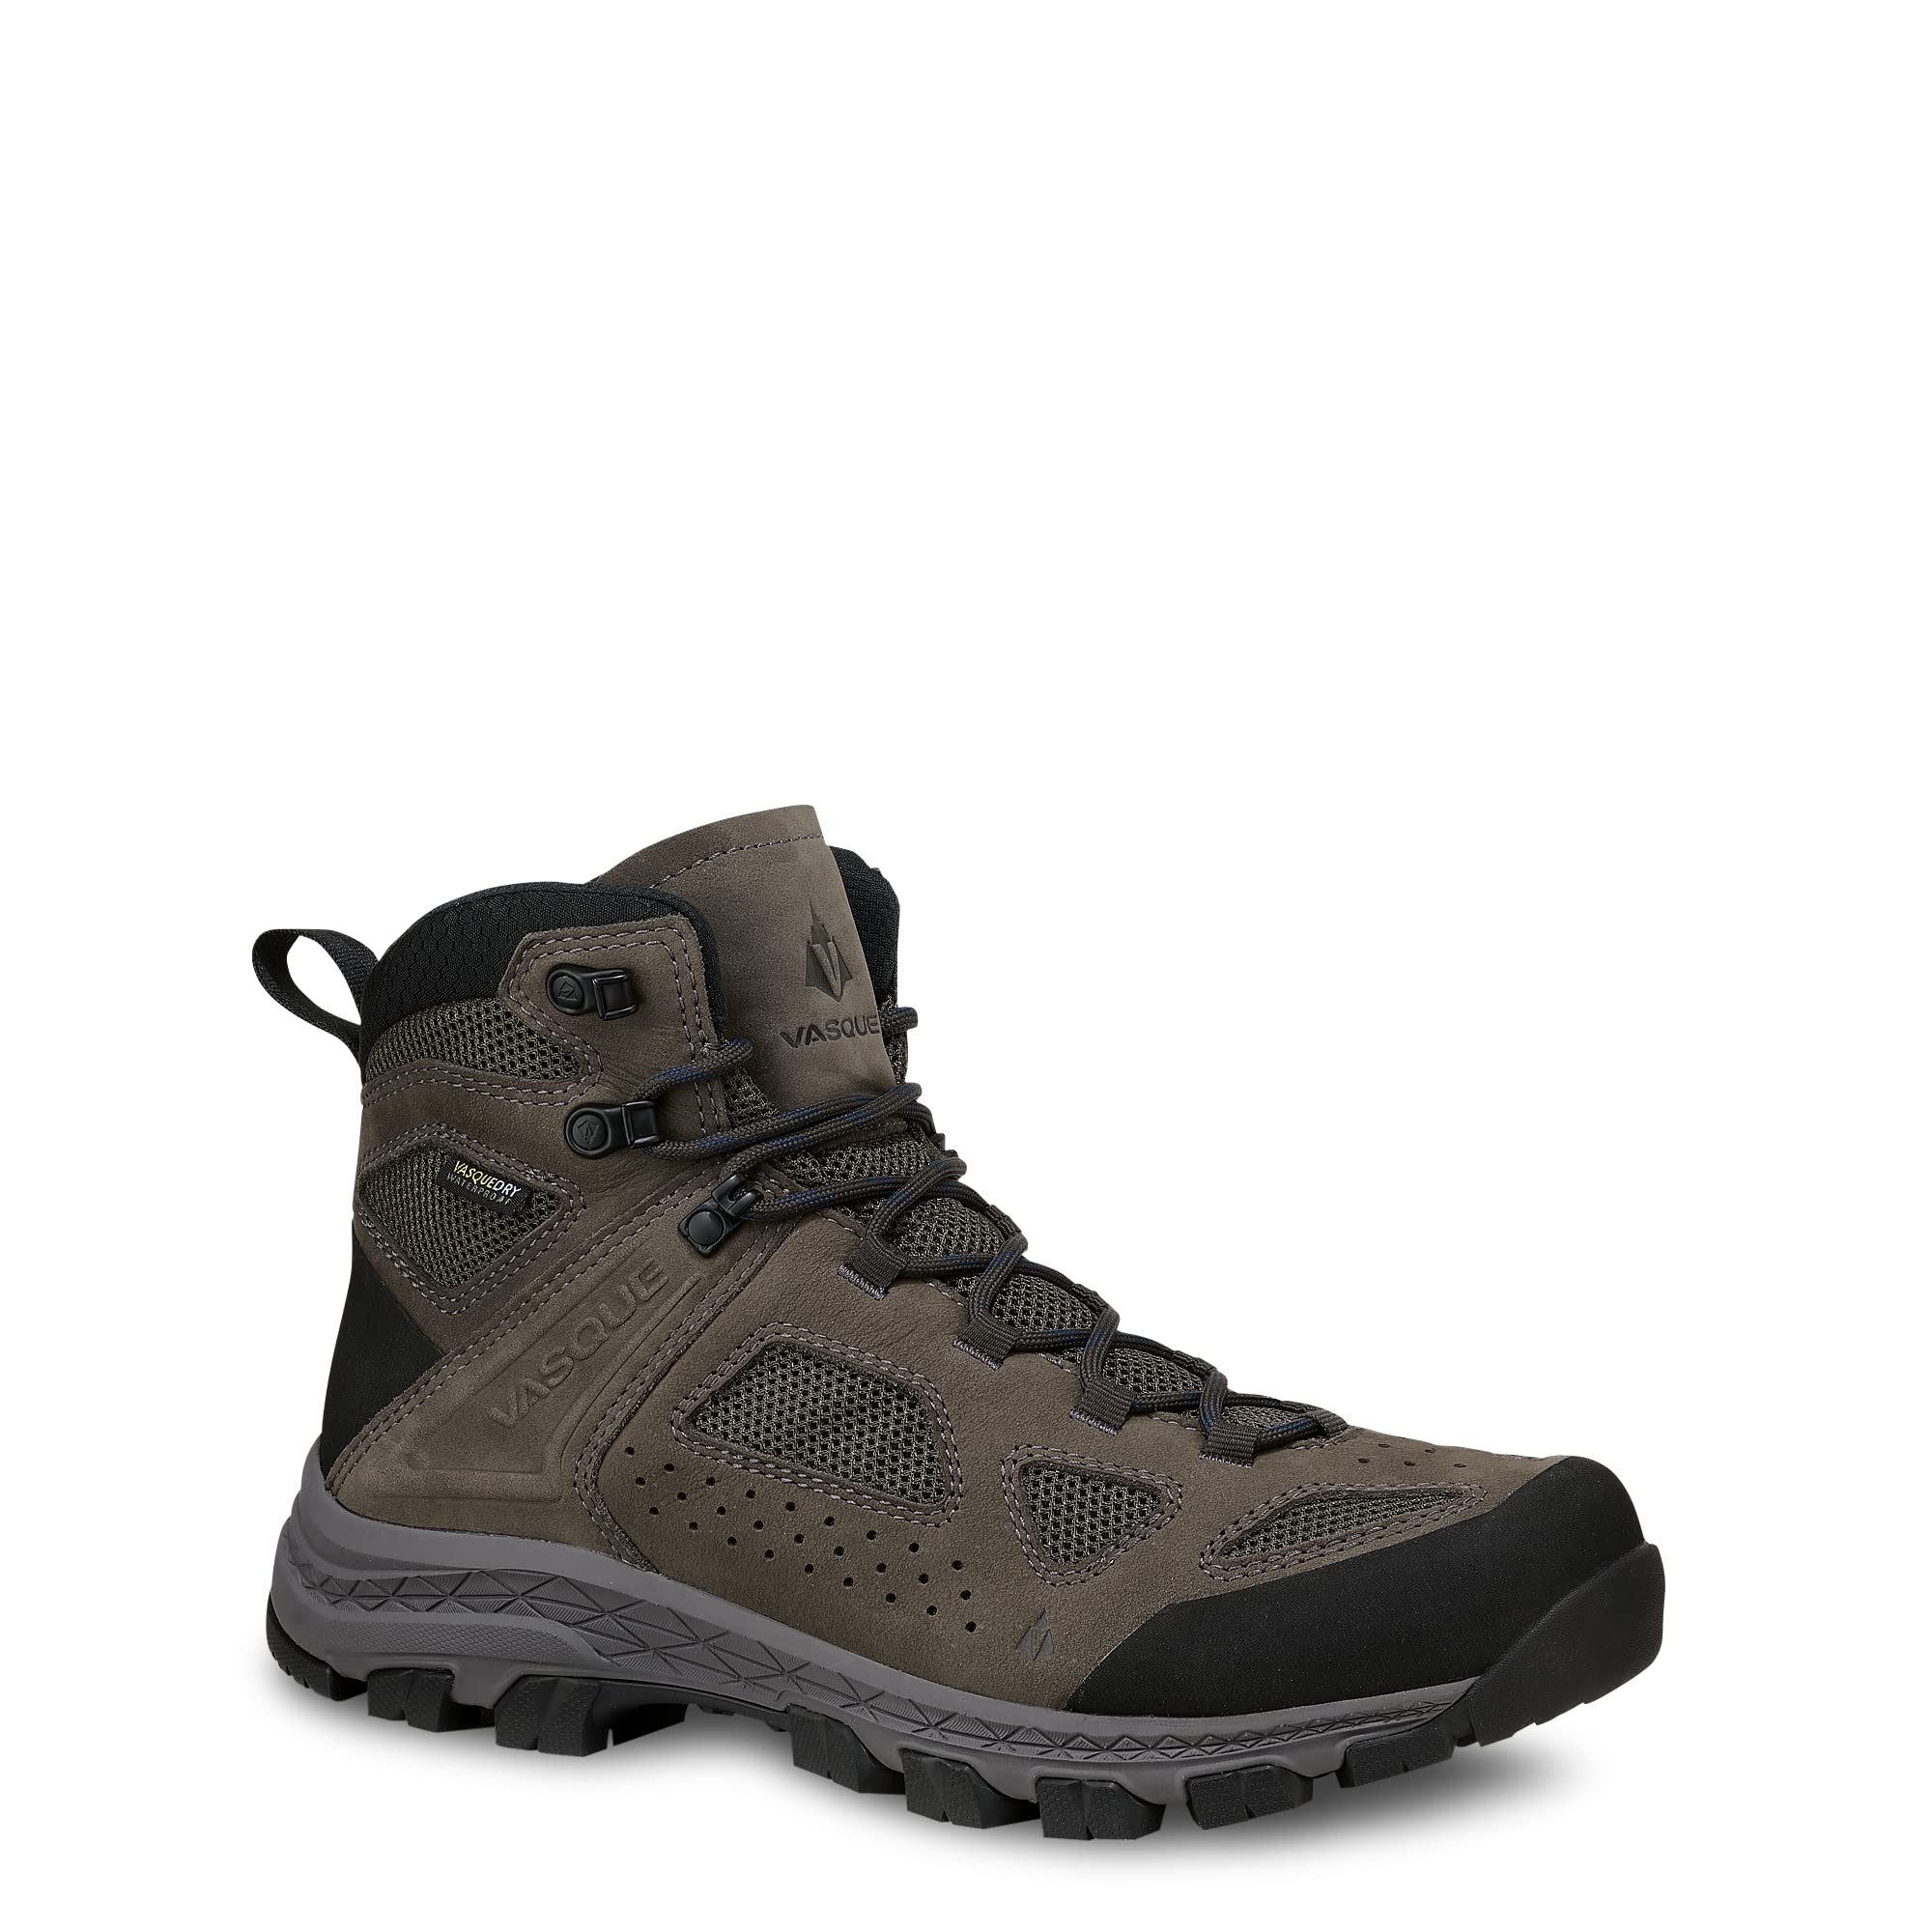 Vasque Men’s Breeze Hiking Boots